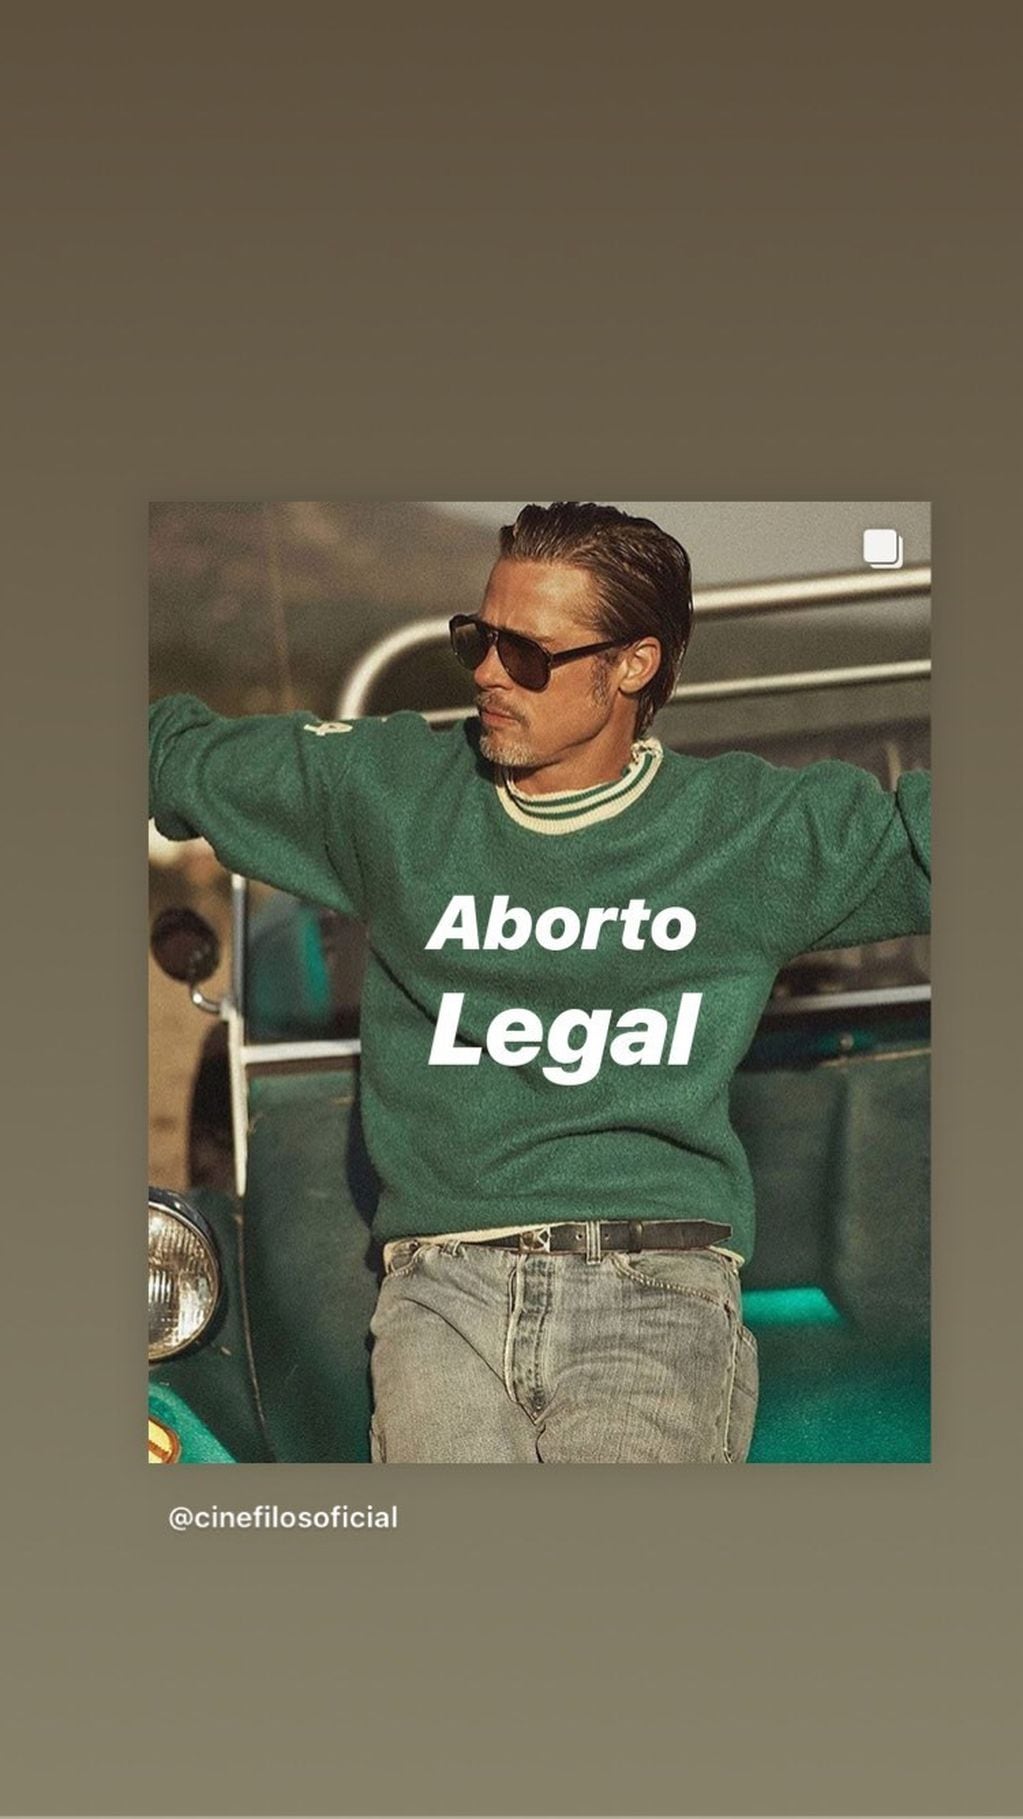 Dolores Fonzi usó a Brad Pitt para hacer campaña a favor de la legalización del aborto (Foto: Instagram/ lolafonca)